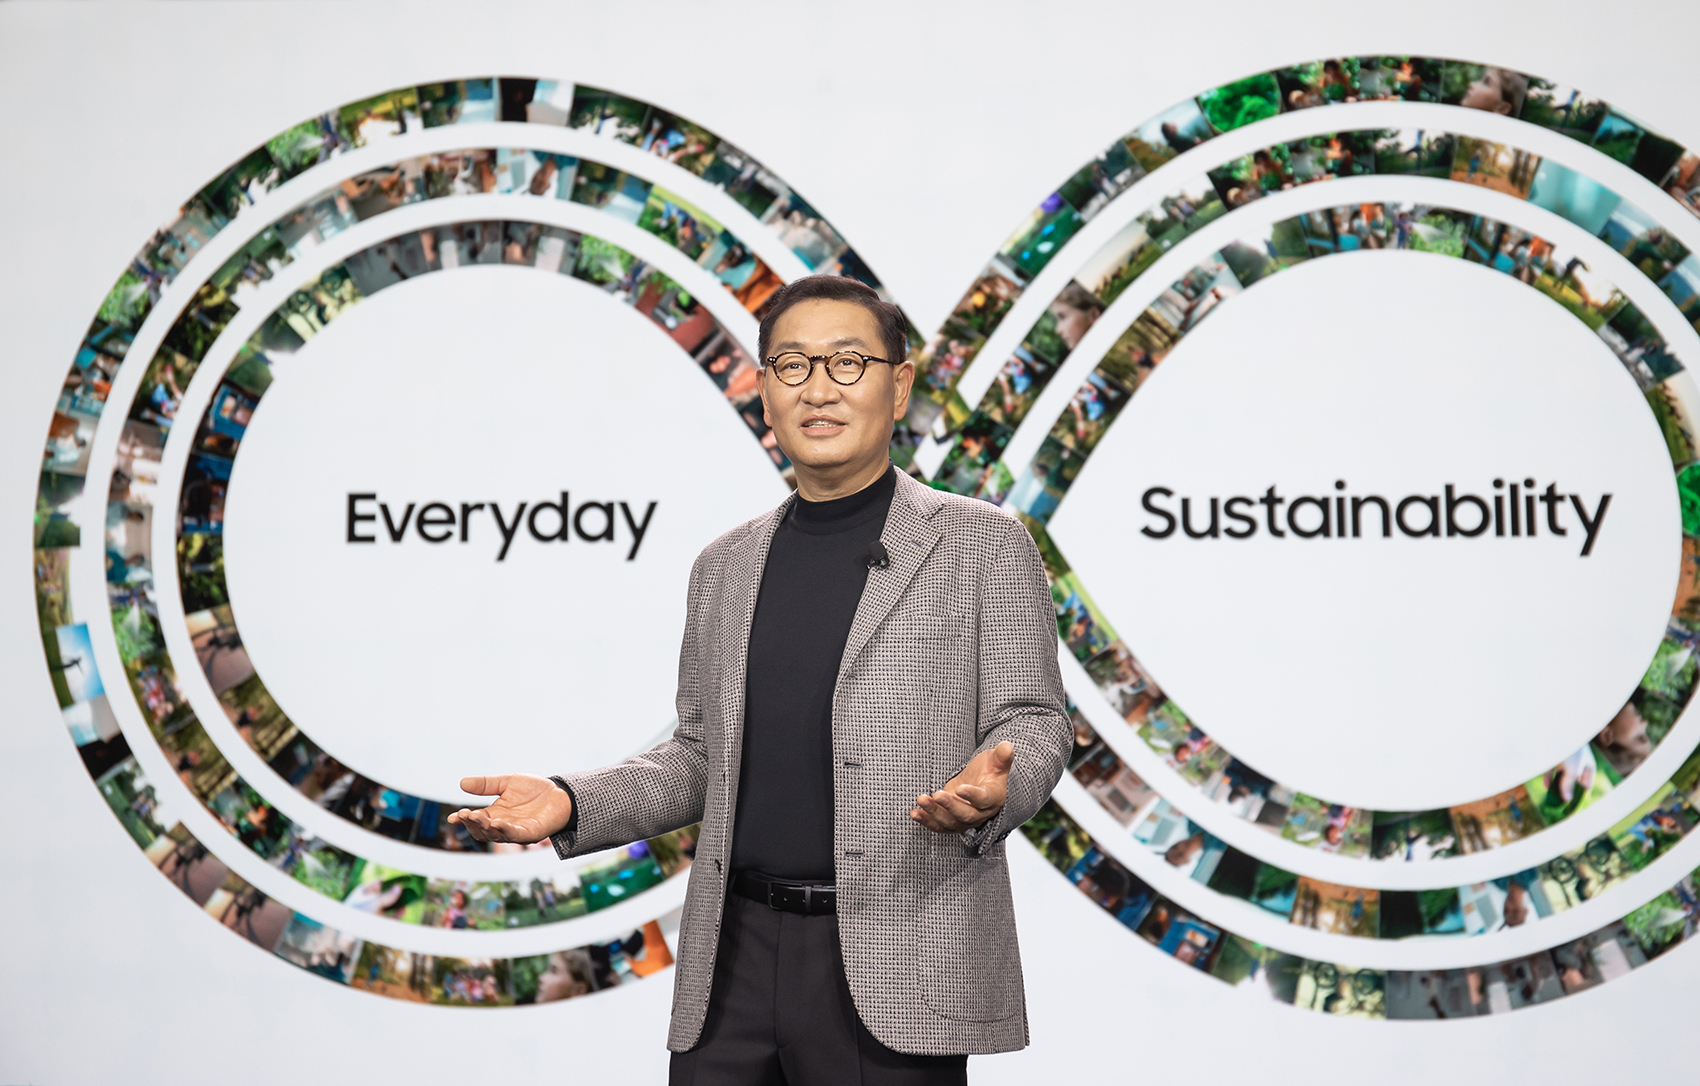 Samsung giới thiệu tầm nhìn ‘Together for Tomorrow’ tại CES 2022, hướng tới xây dựng một tương lai bền vững